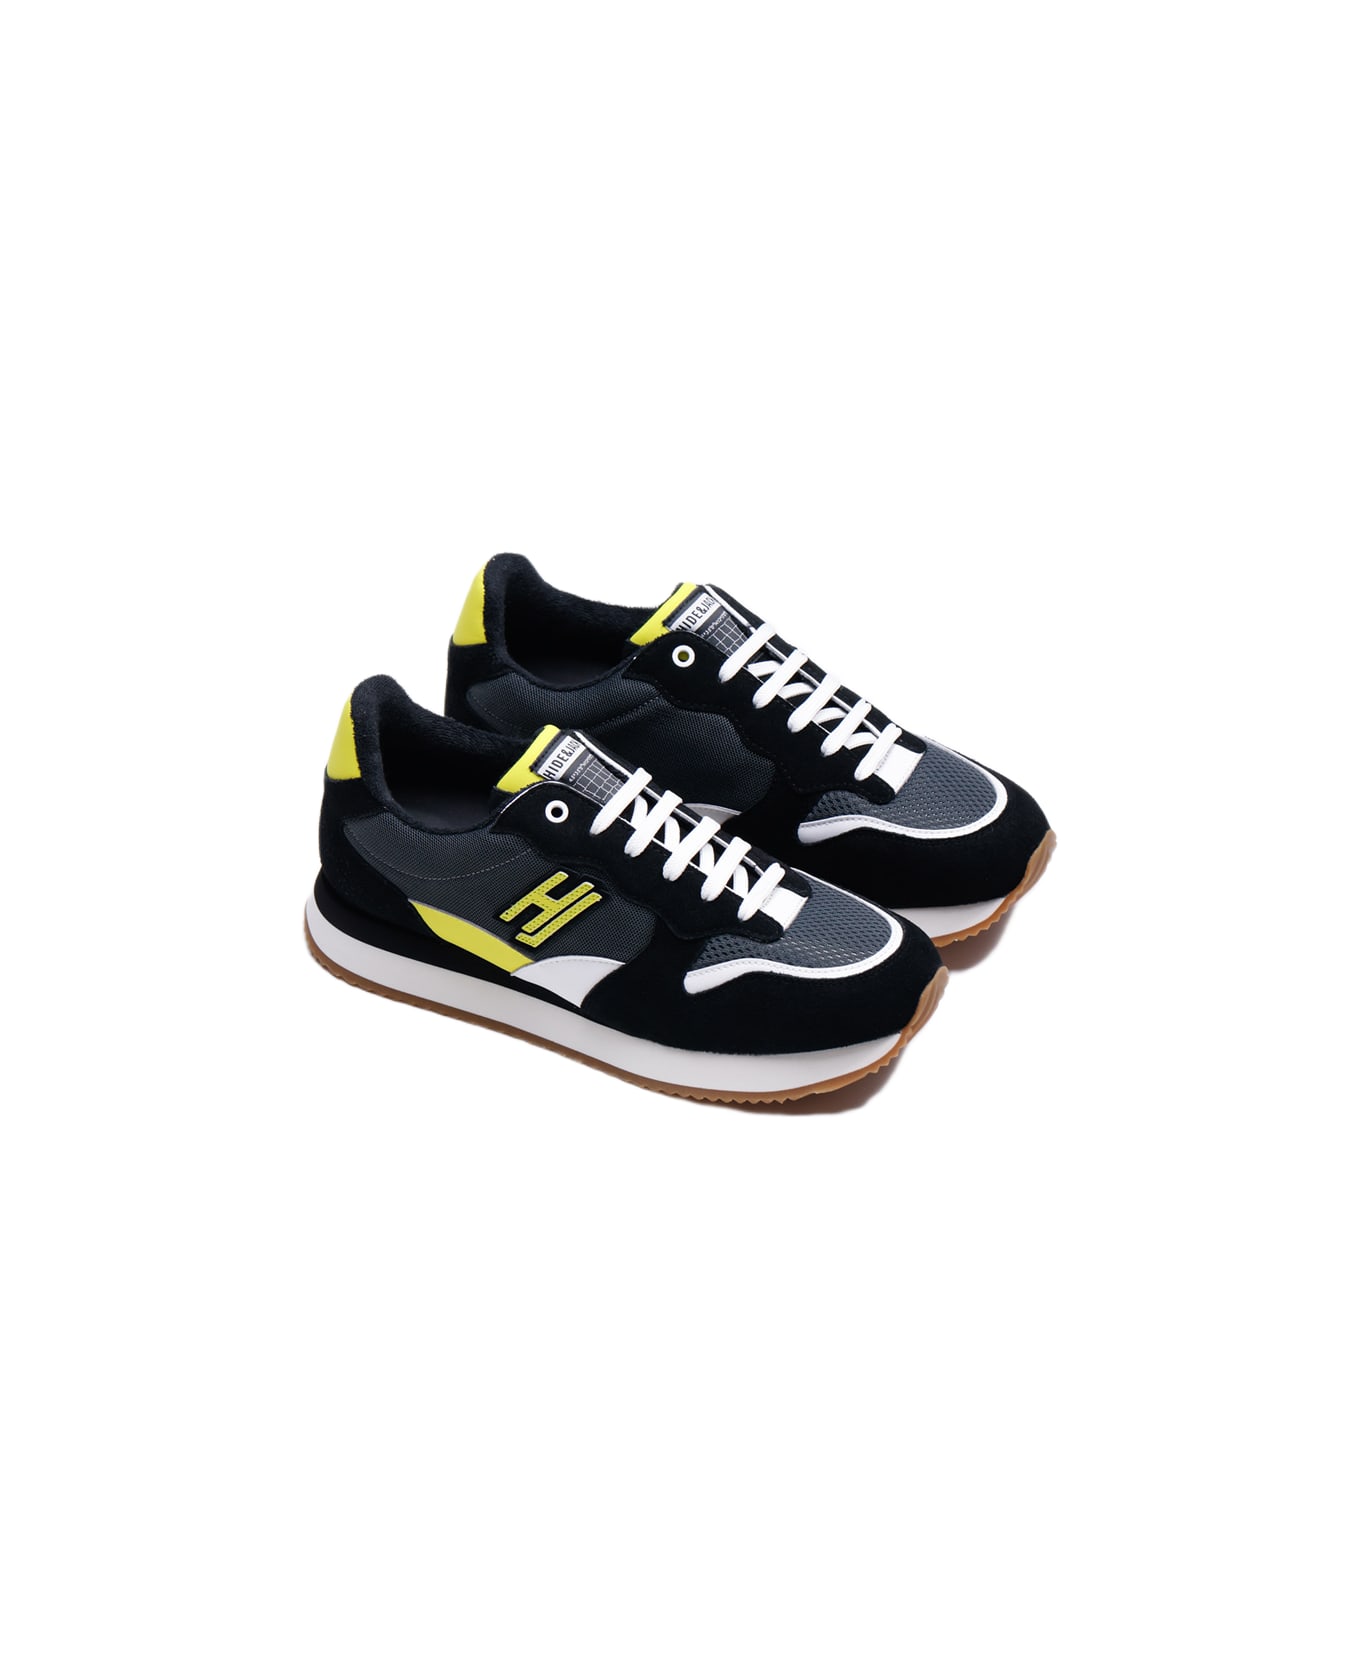 Hide&Jack Low Top Sneaker - Over Black Yellow スニーカー